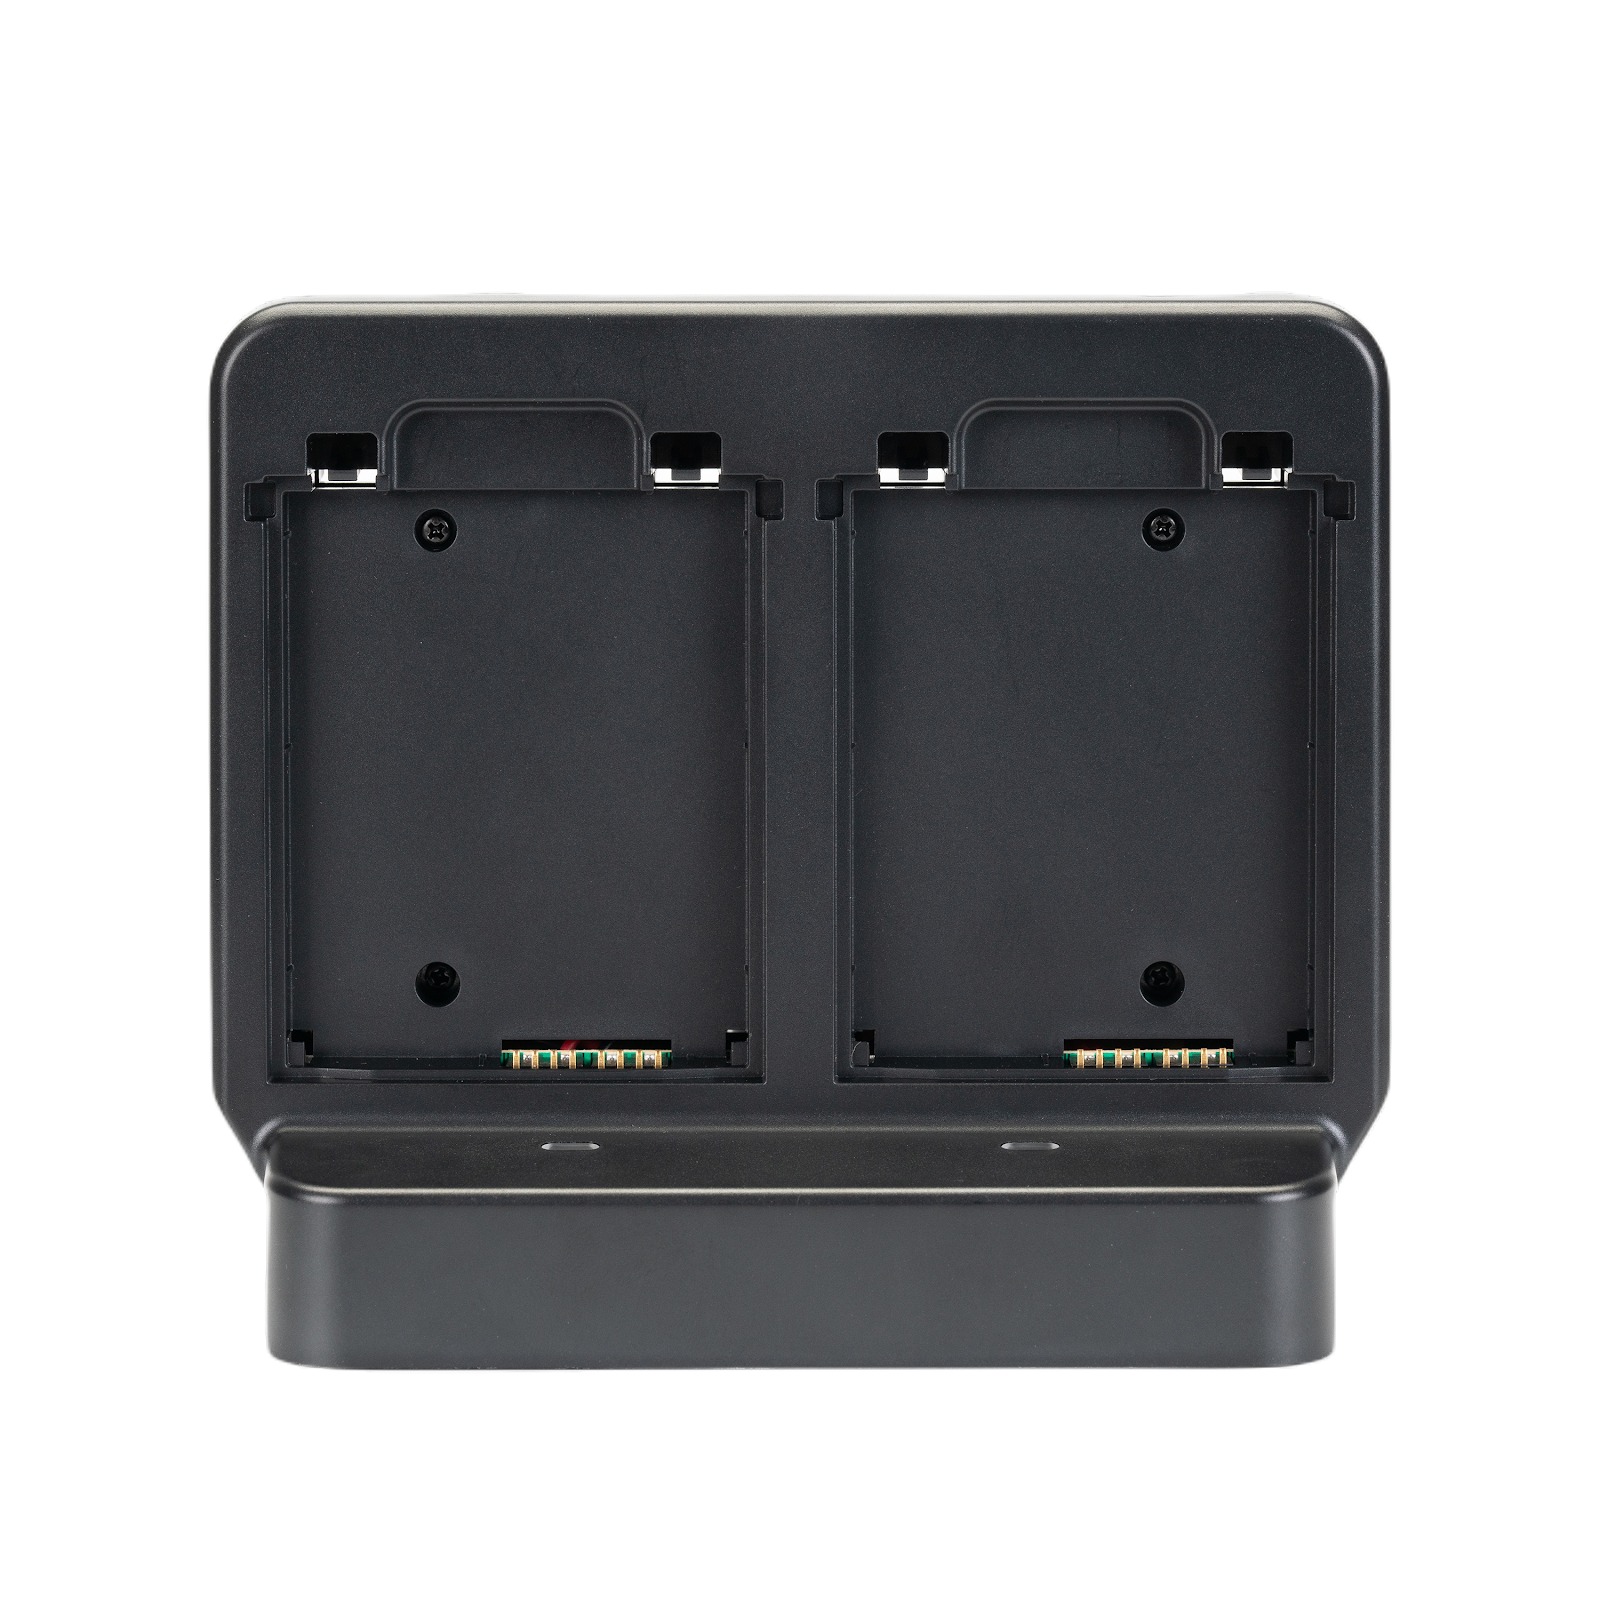 Зарядная подставка для АКБ iData T2S (4-slot baterry cradle) заказать в ККМ.ЦЕНТР